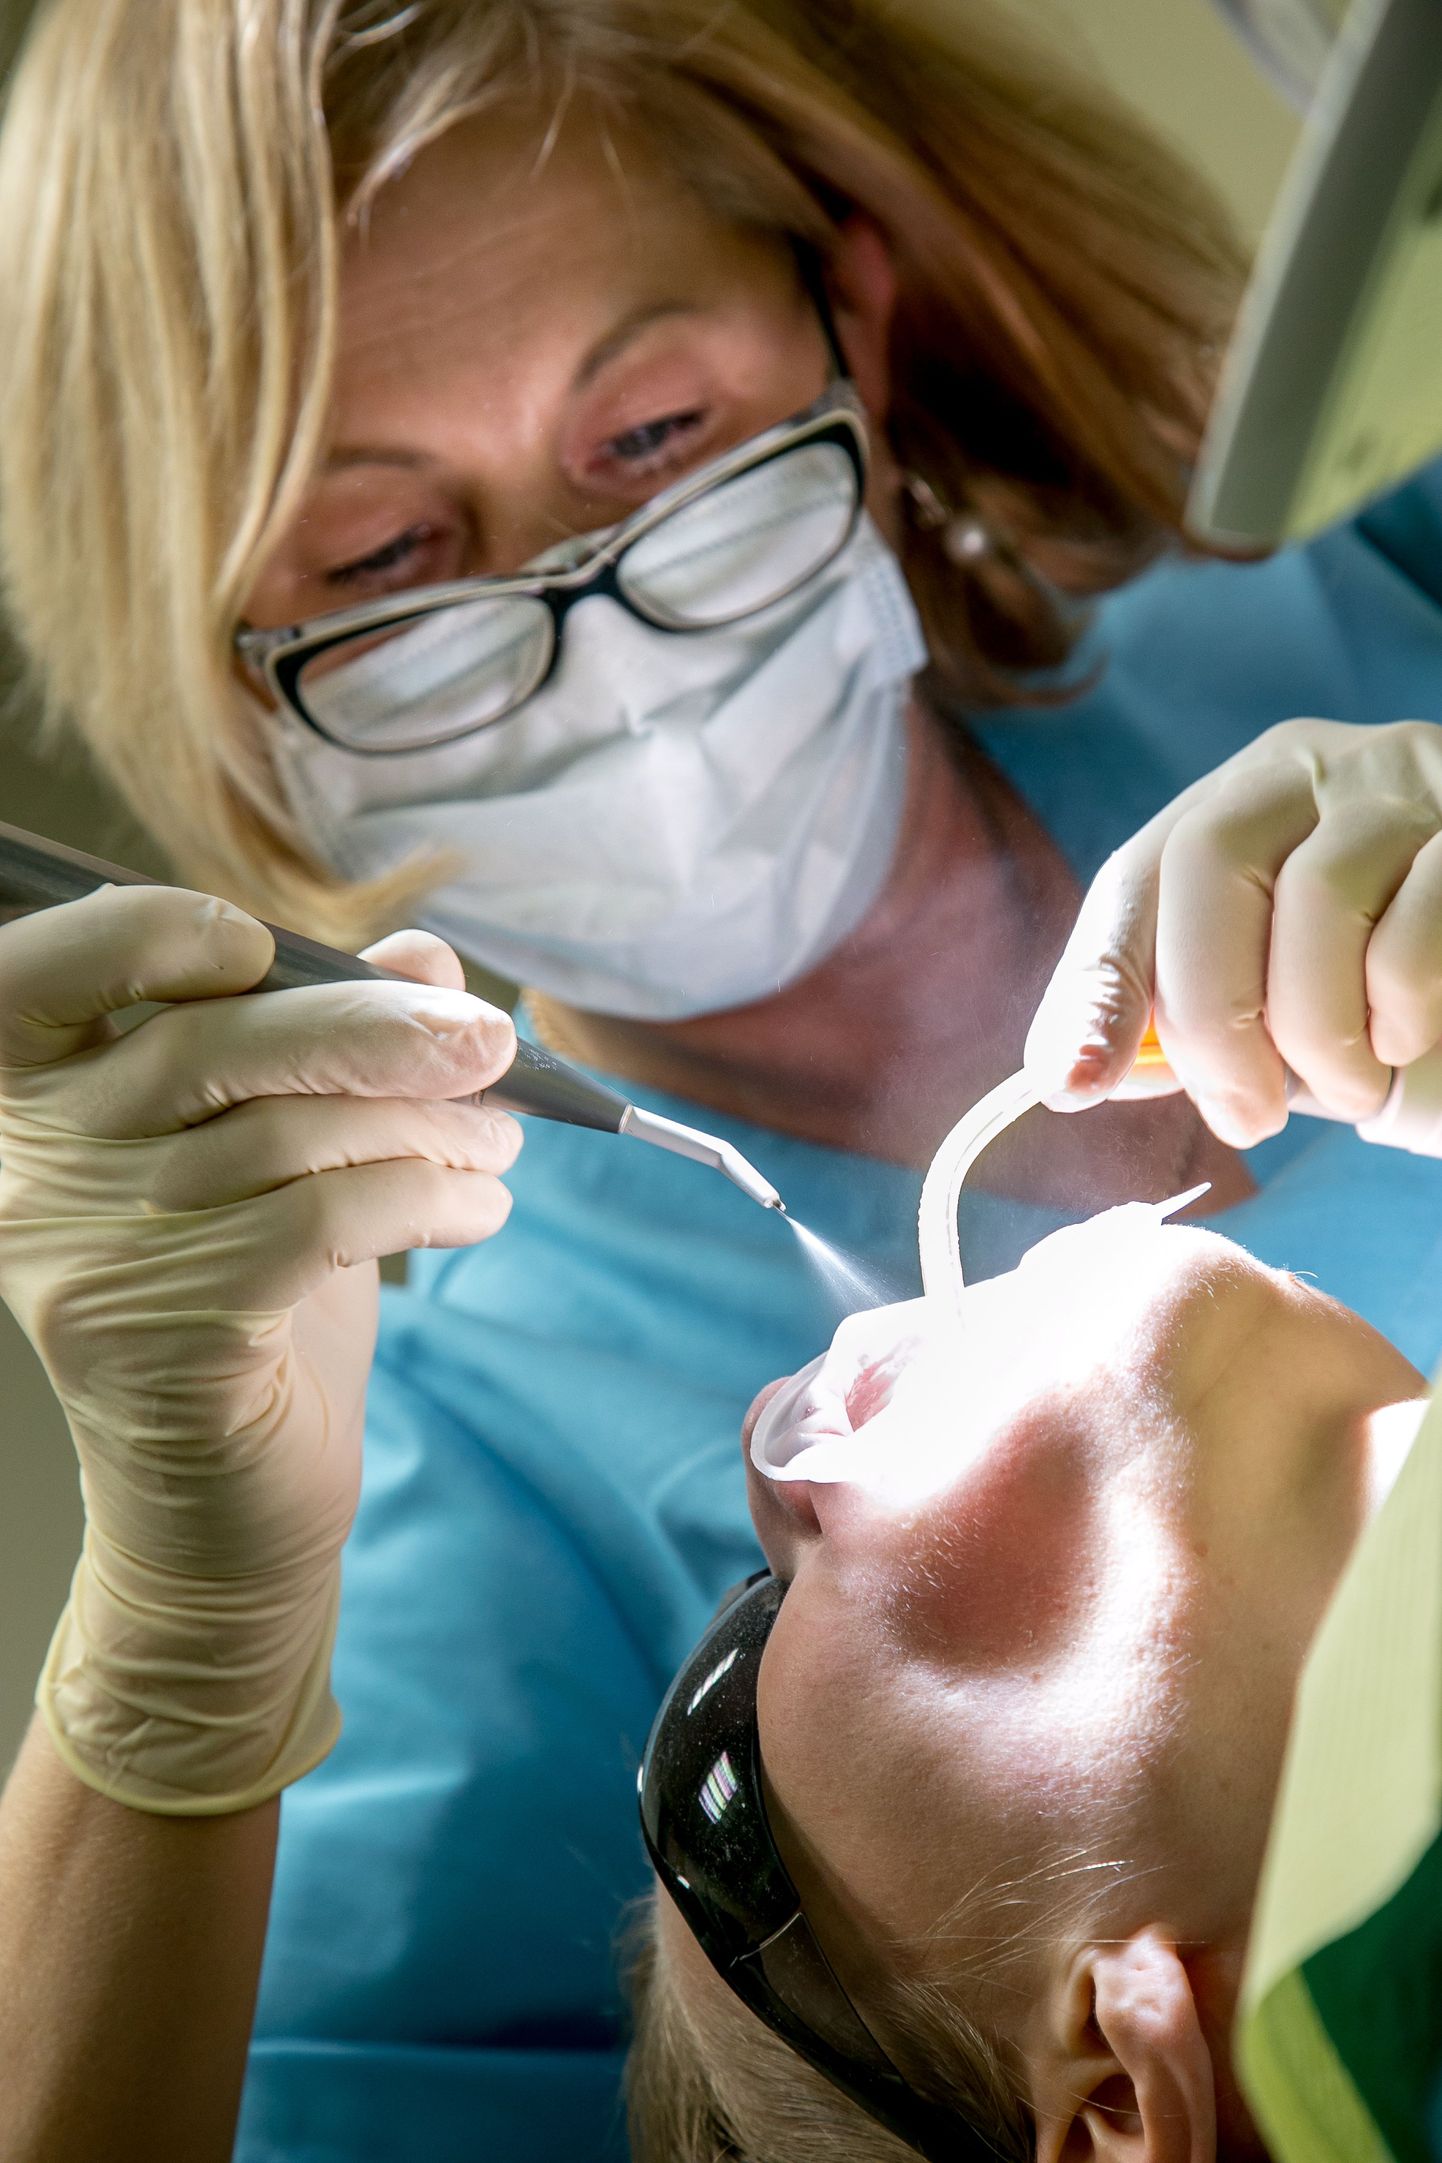 1. juulist saavad täiskasvanud ravikindlustatud hambaravihüvitist kuni 30 eurot aastas. Praegu hüvitist saavate inimeste hüvitist suurendatakse 85 euroni aastas. Eakatel jääb alles hambaproteesihüvitis 255,65 eurot kolme aasta peale.